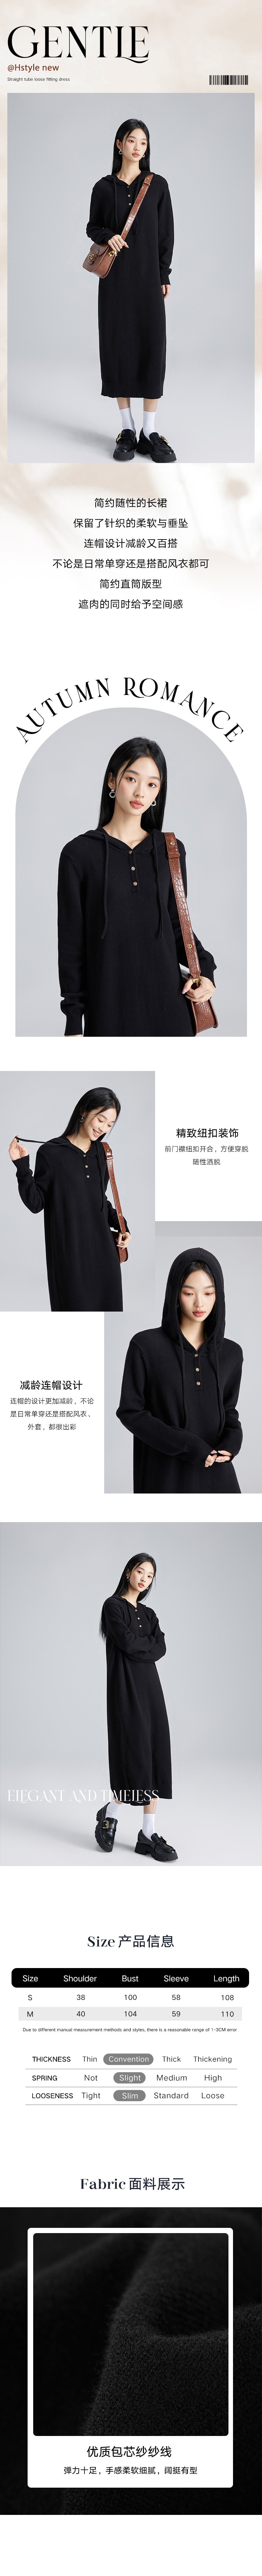 【中国直邮】HSPM 新款连帽针织连衣裙 黑色 S